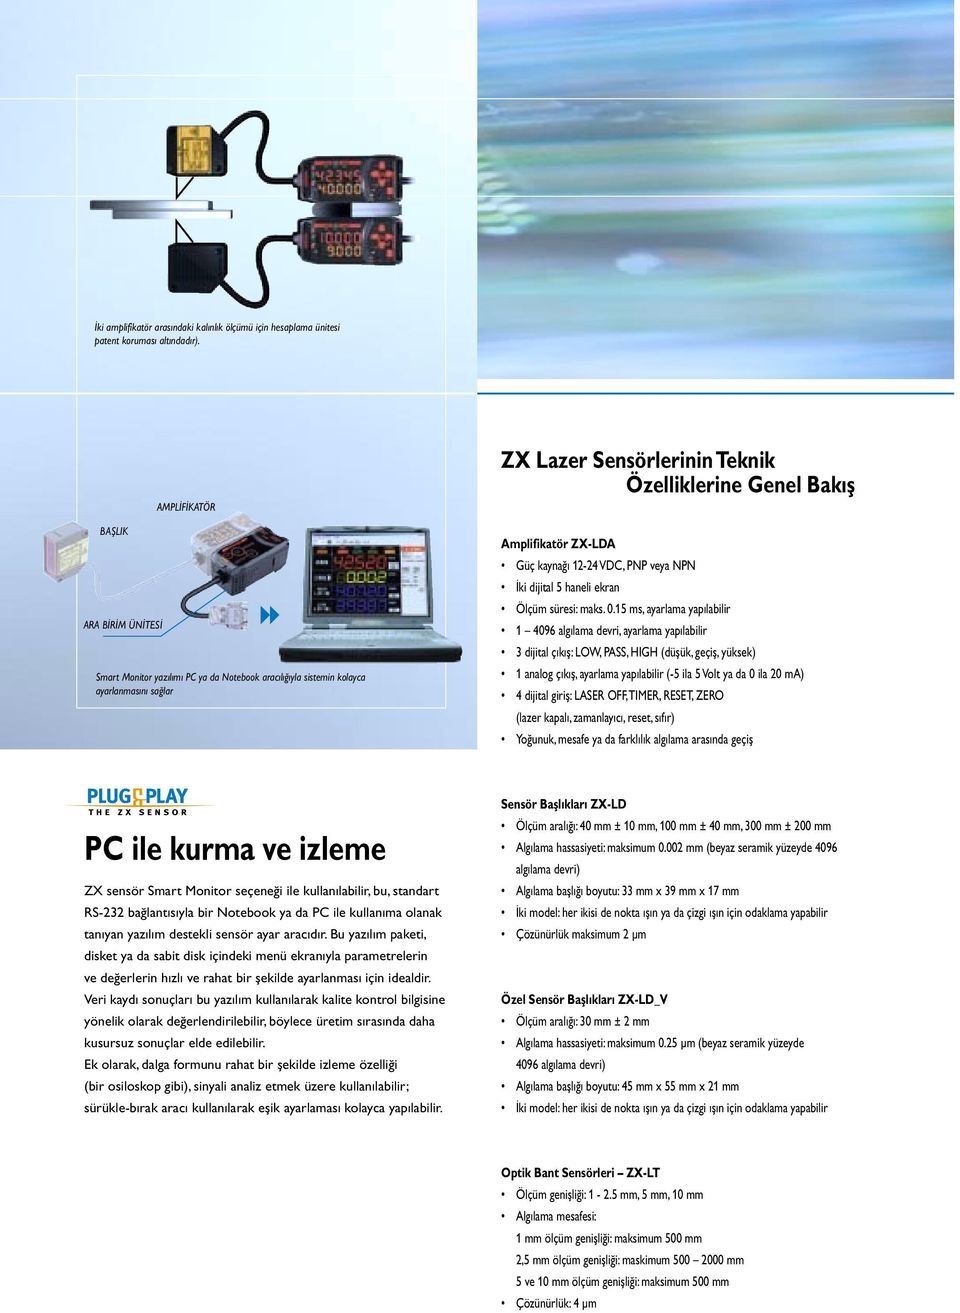 ZX-LDA Güç kaynağı 12-24 VDC, PNP veya NPN İki dijital 5 haneli ekran Ölçüm süresi: maks. 0.